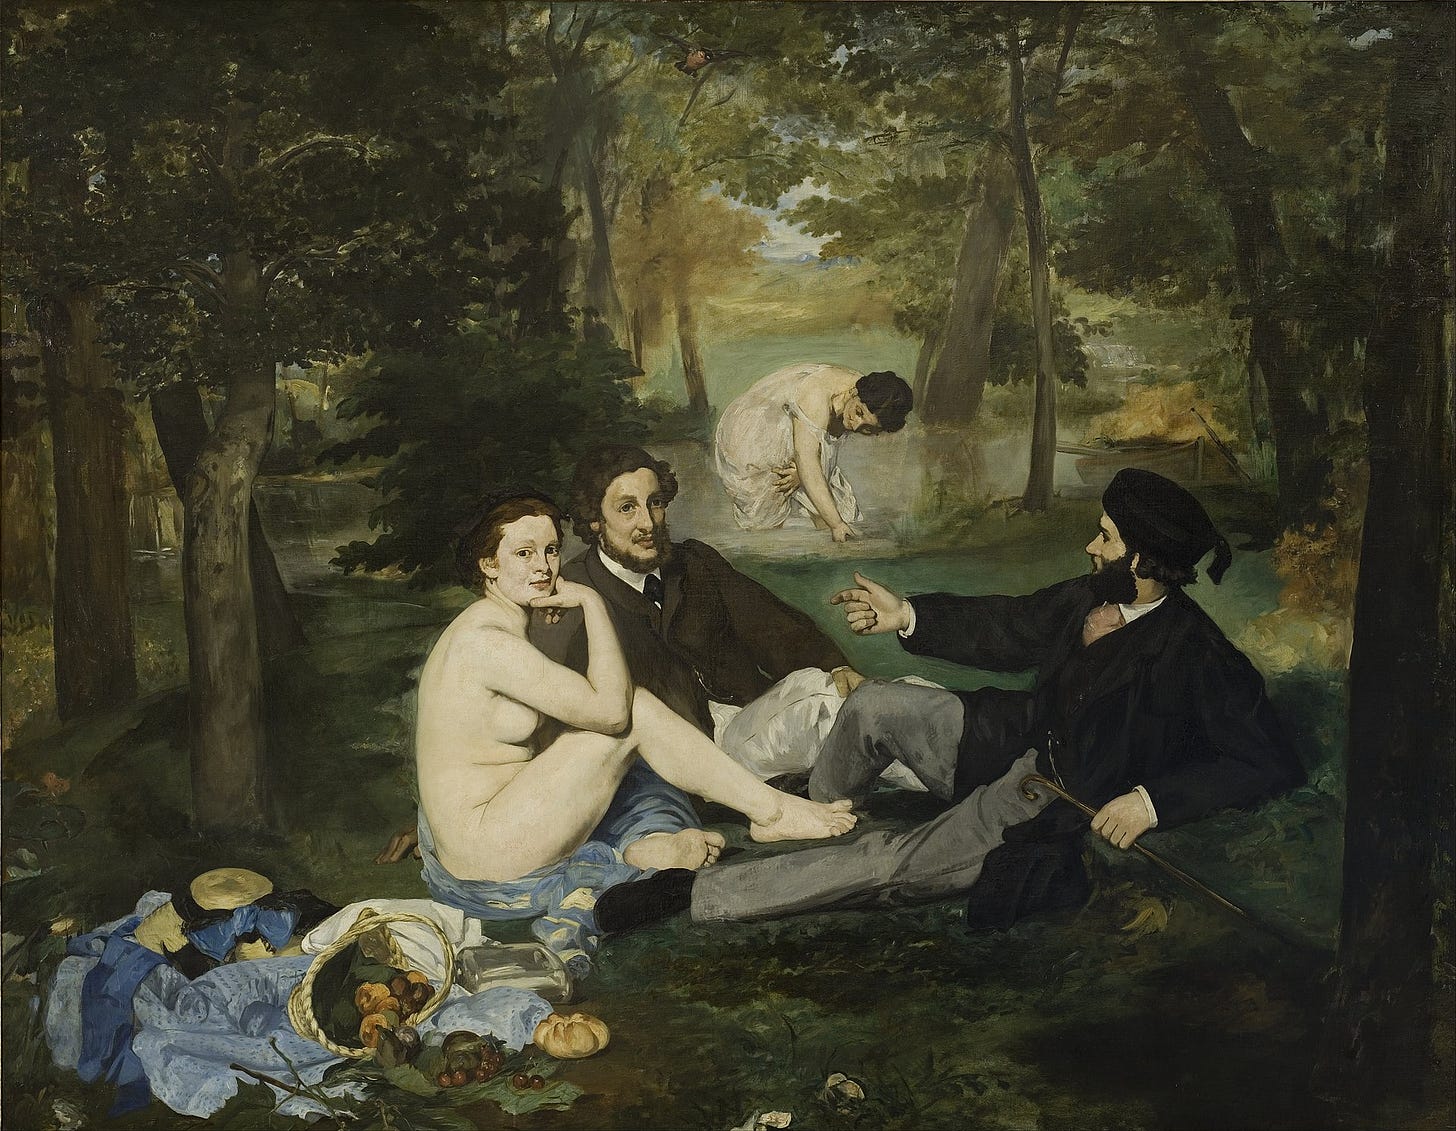 Le Dejeuner sur l'Herbe - Edouard Manet